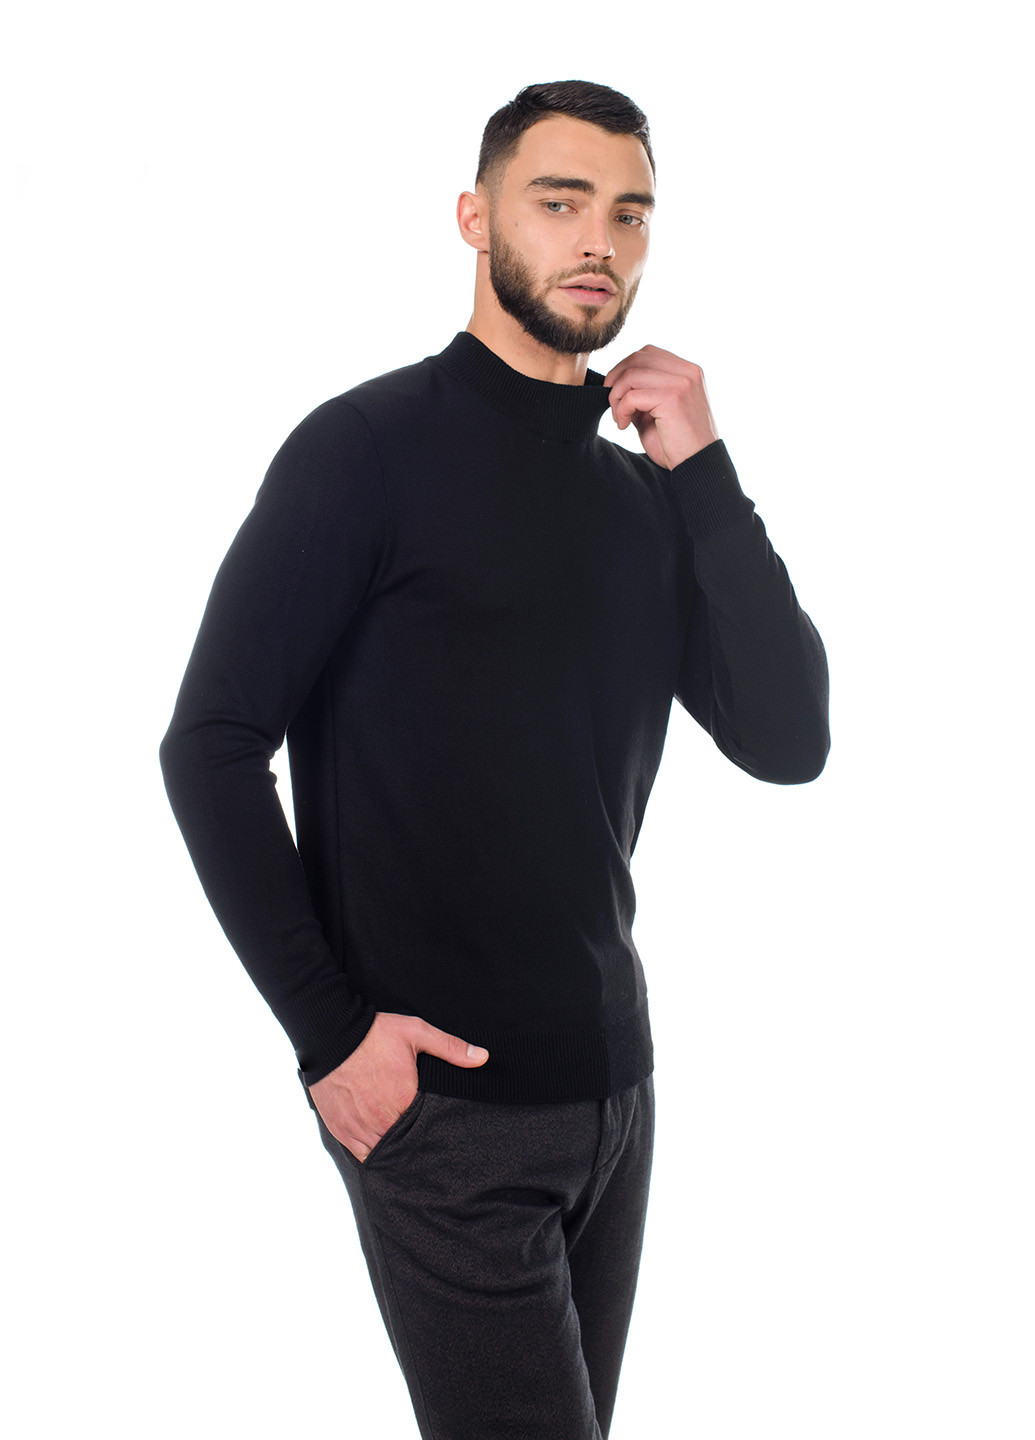 Черный мужской свитер с воротником "стойка" SVTR